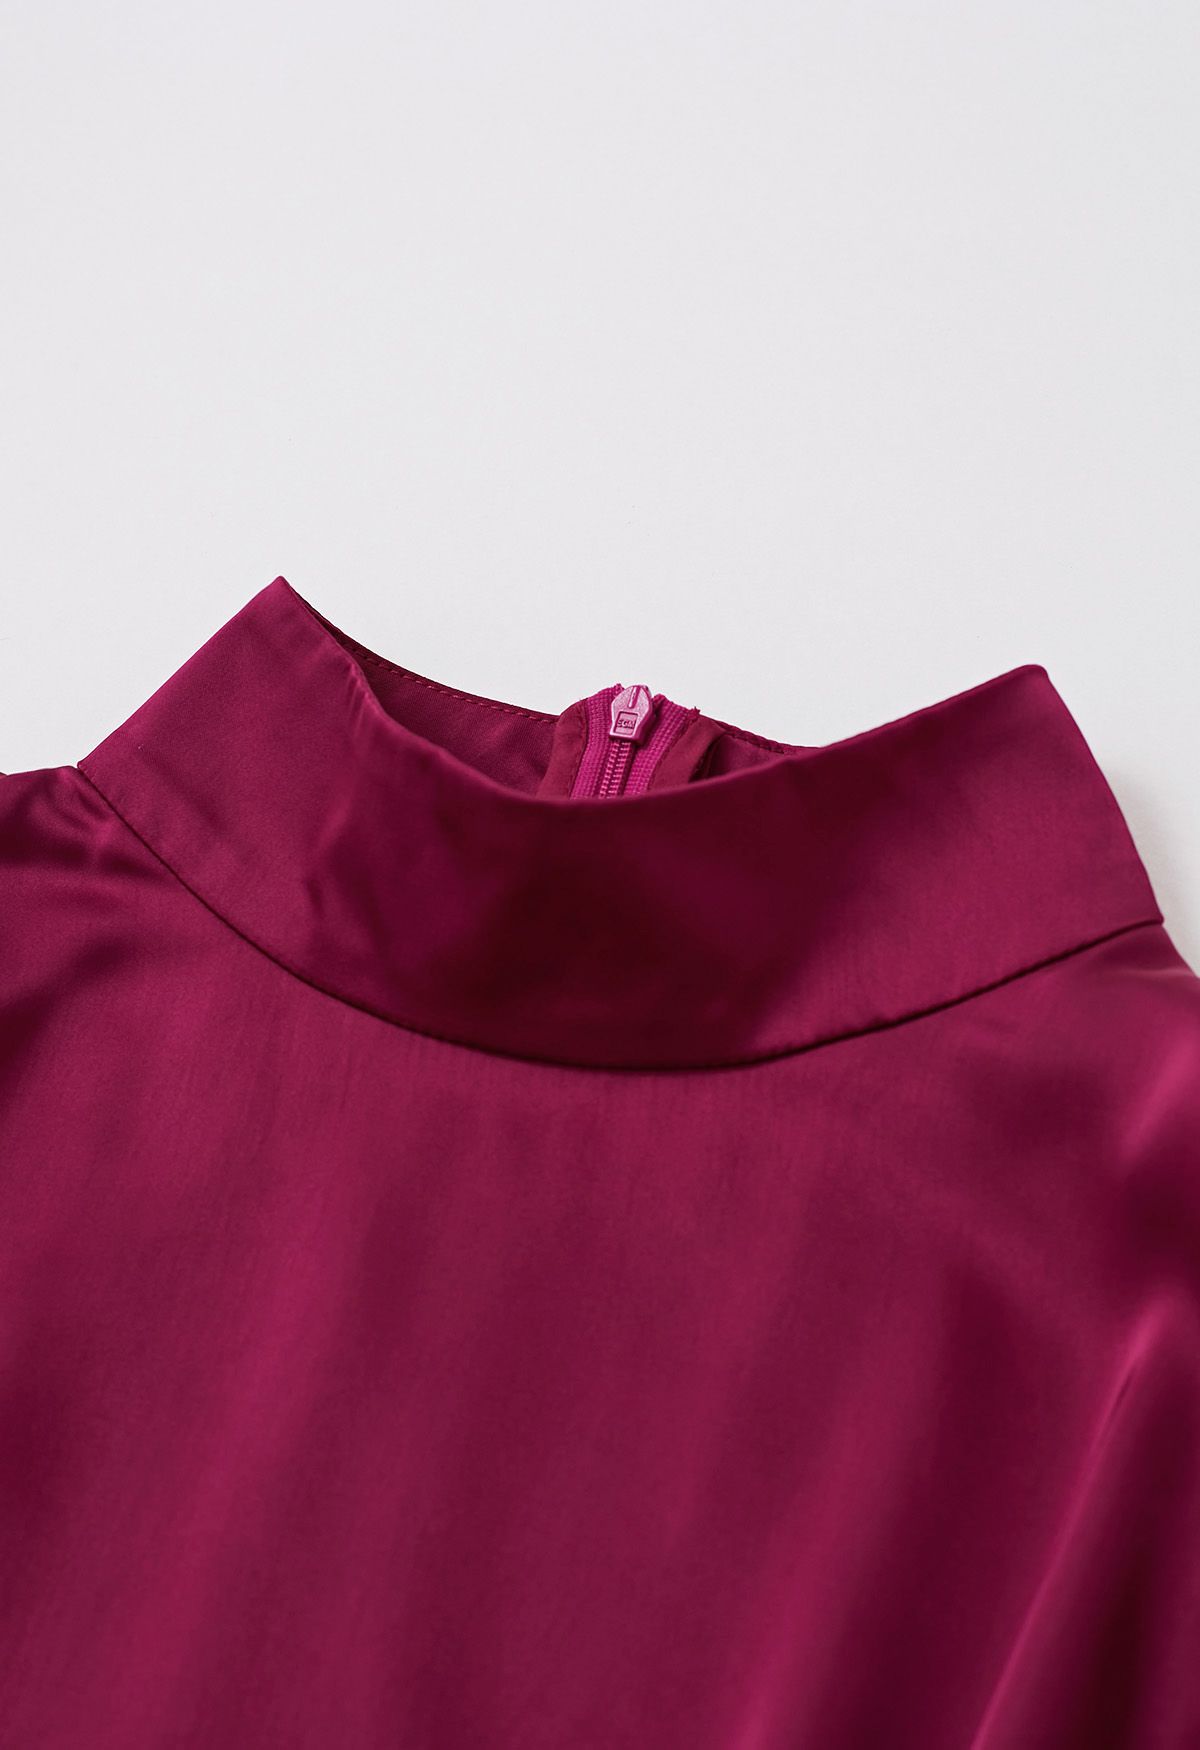 فستان شاين برايت طويل من التول بياقة عالية باللون العنابي